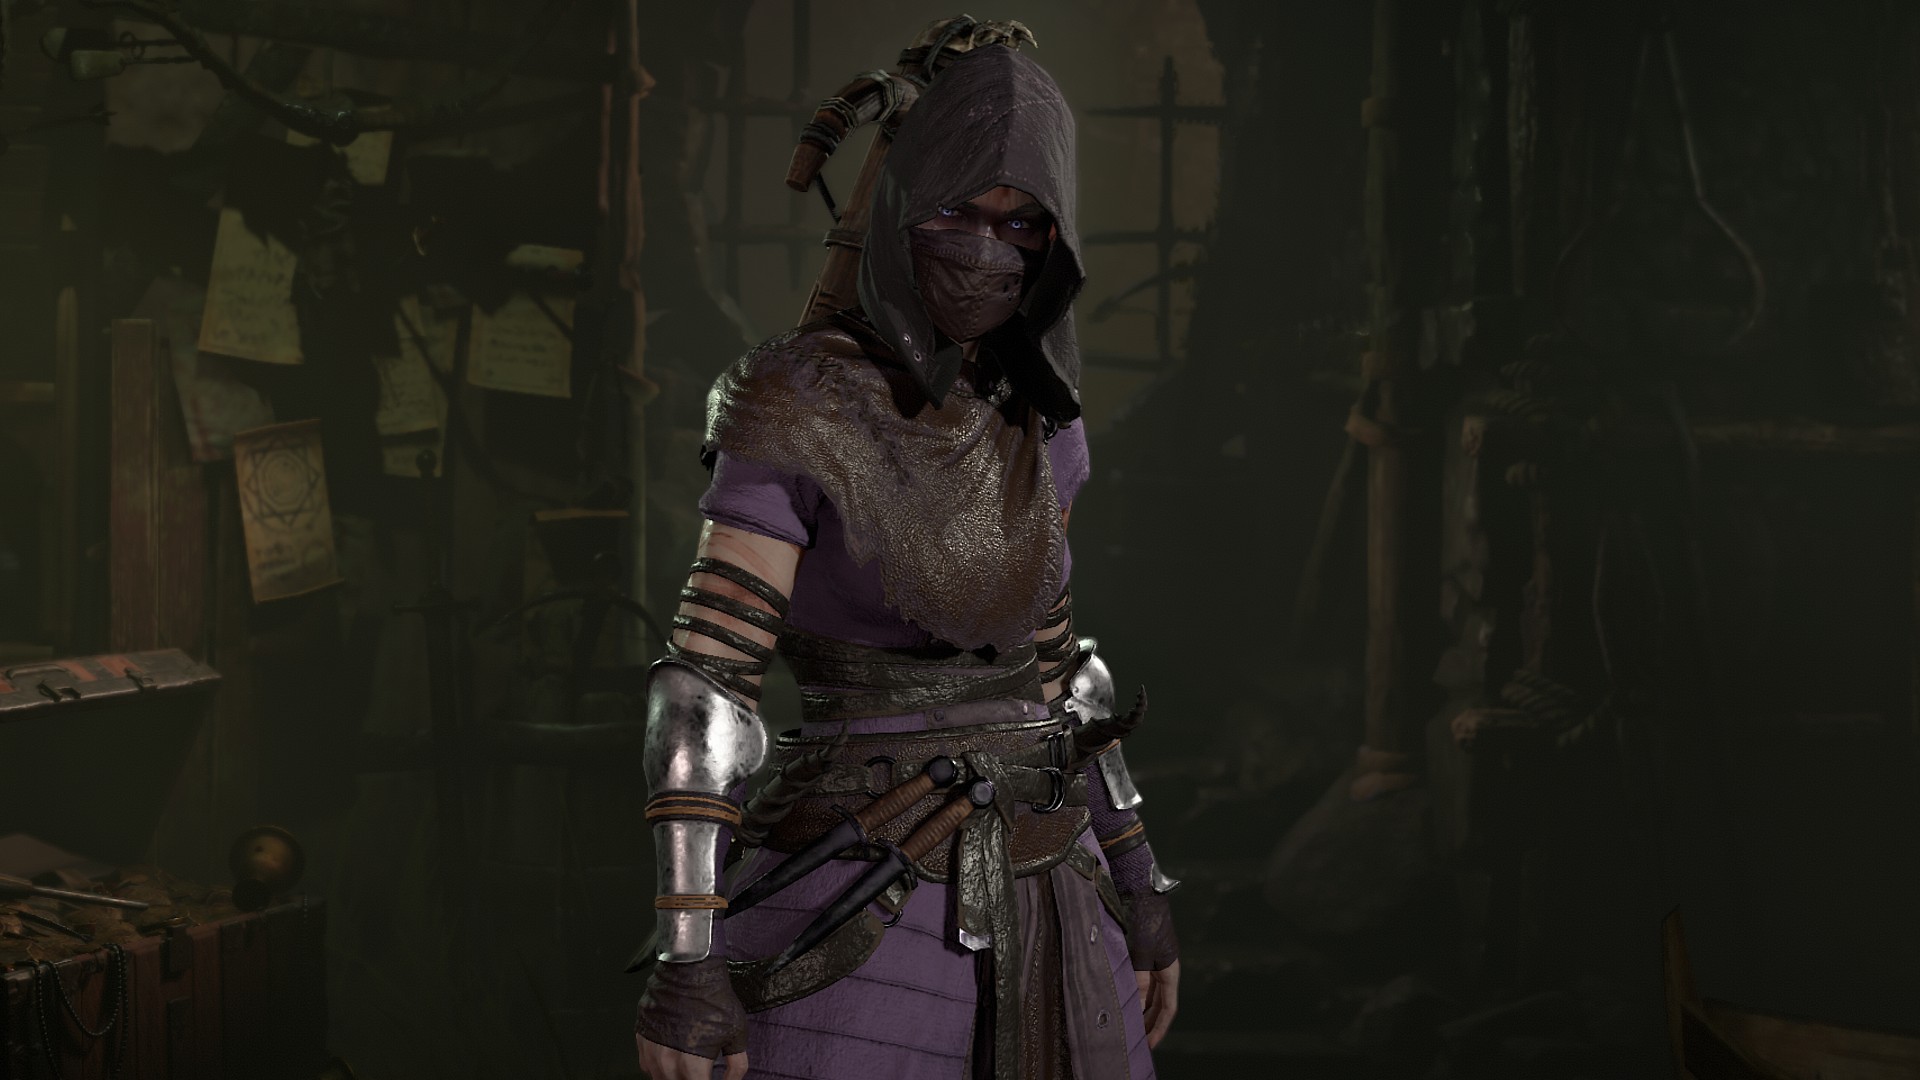 Diablo 4 Class: Seorang wanita yang mengenakan tudung yang menutupi wajahnya, serta topeng hitam dengan baju besi kain ungu dan ikat pinggang di pinggangnya di ruang bawah tanah yang gelap